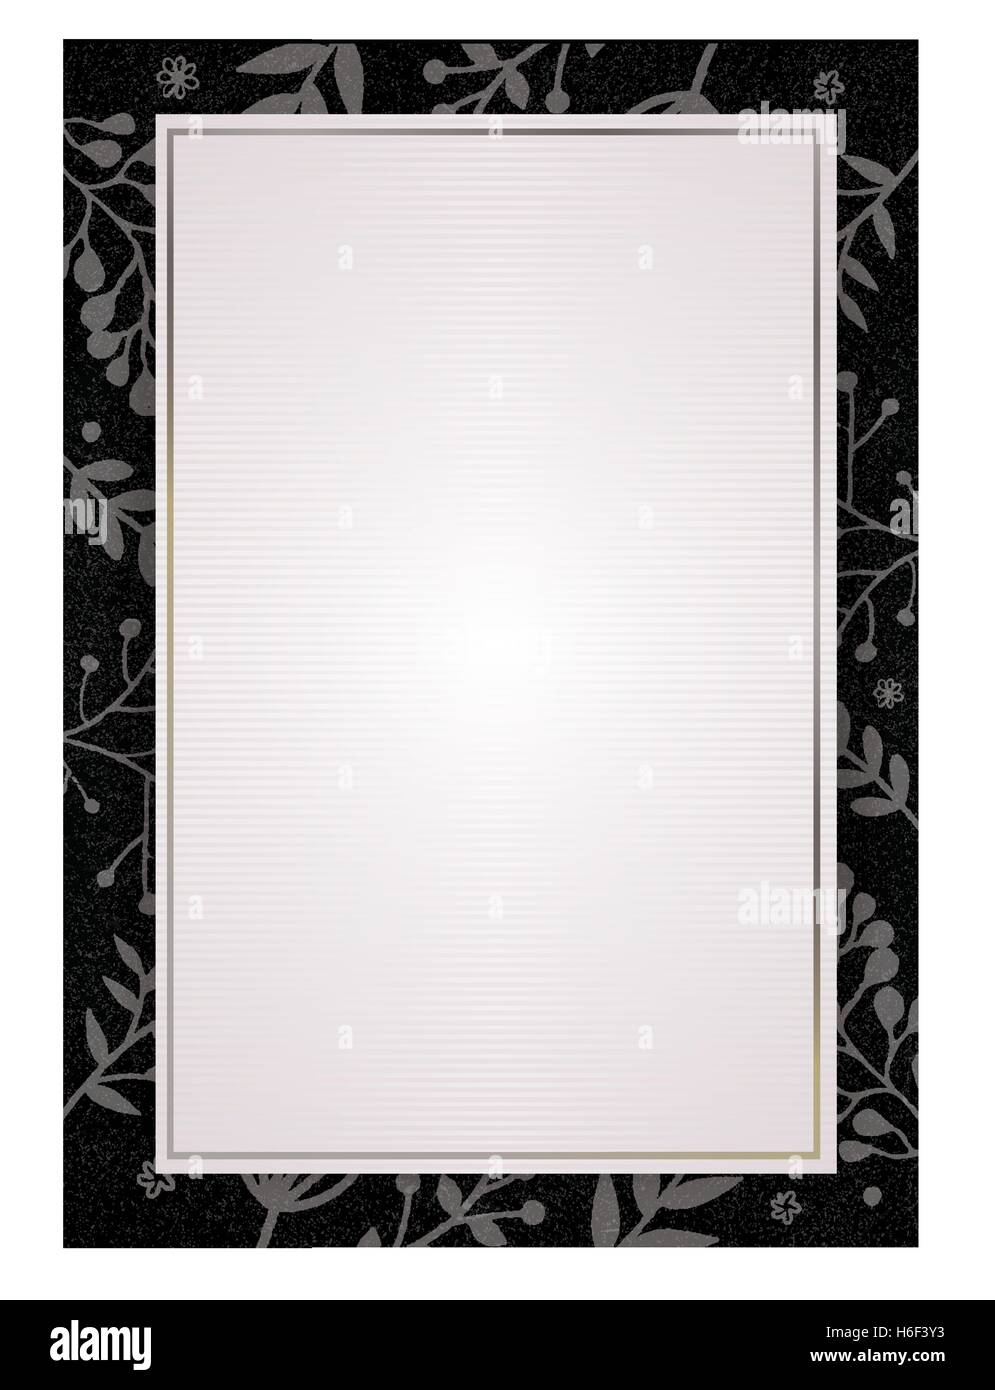 Document A4 size white paper background avec dessin gris flores et bordure noire Illustration de Vecteur